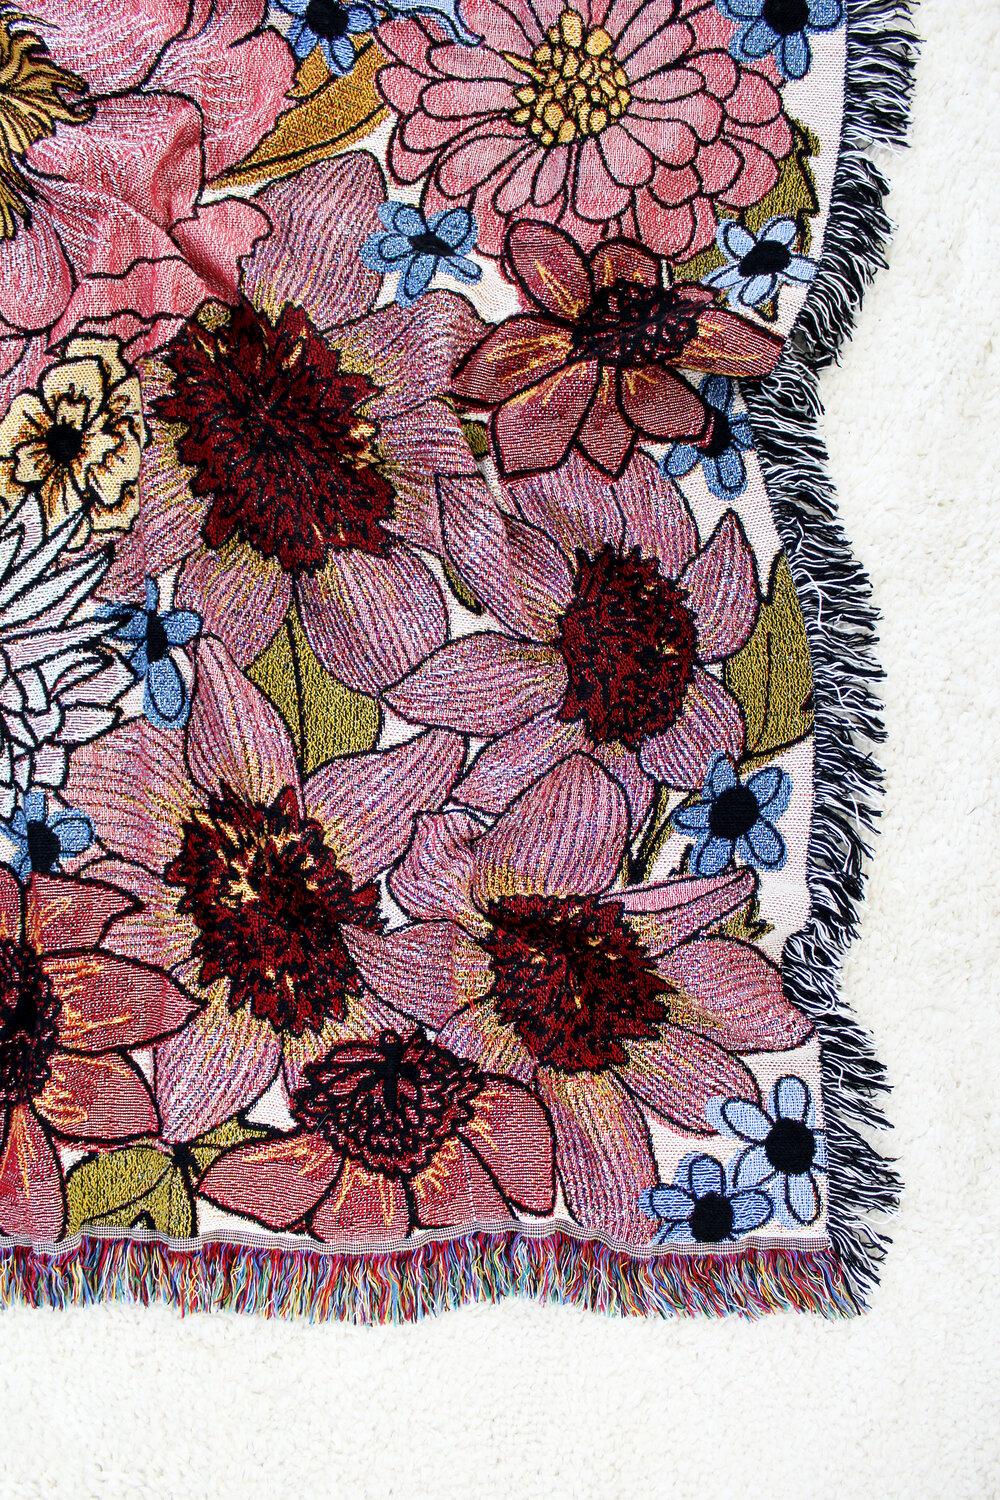 外箱不良宅配便送料無料 Voysey Rowan Tree Diurnal Blanket Arts ＆ Crafts Gift  Tapestry Throw Woven from Cotton Made in The USA (72x54)